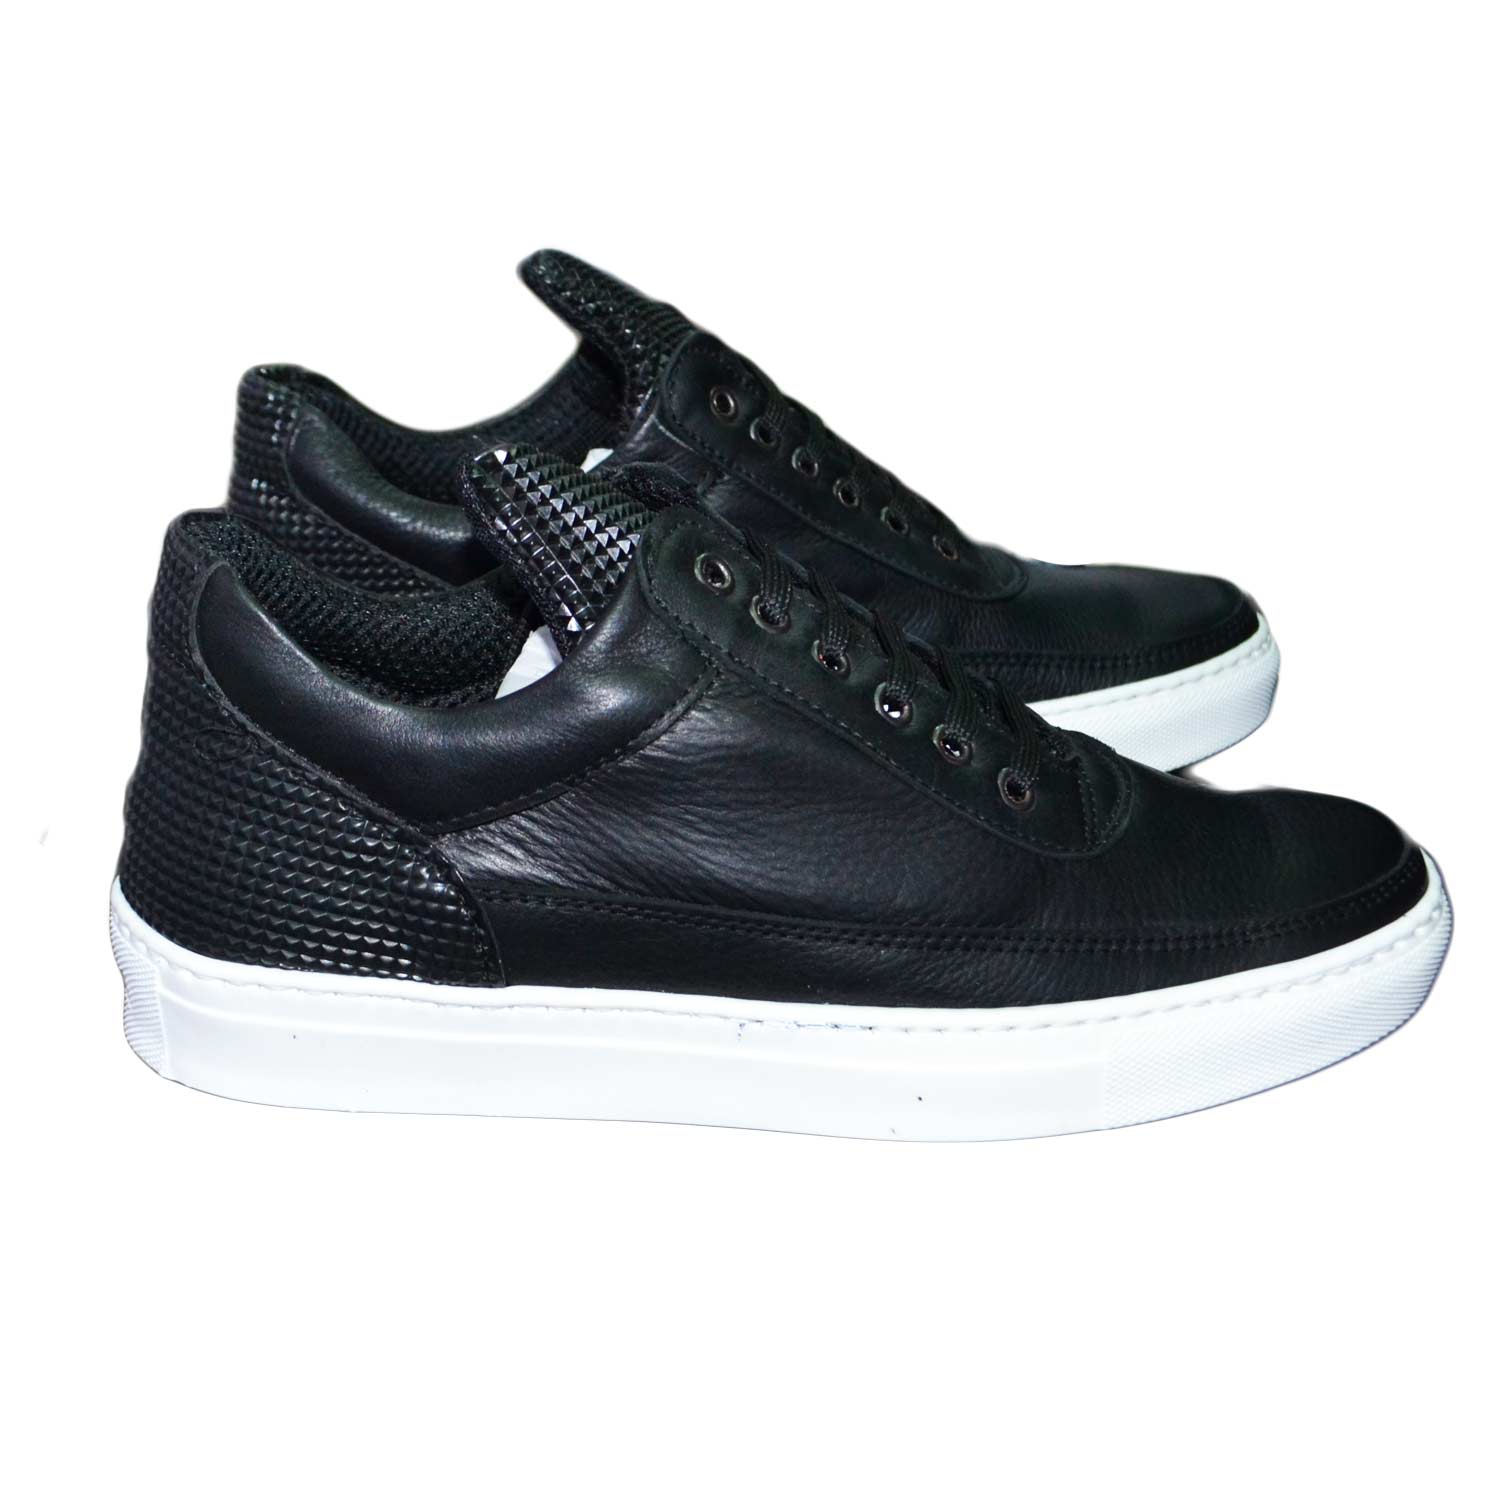 Sneakers bassa uomo scarpe calzature modello phil dettaglio piramide nero e vitello nero vera pelle.